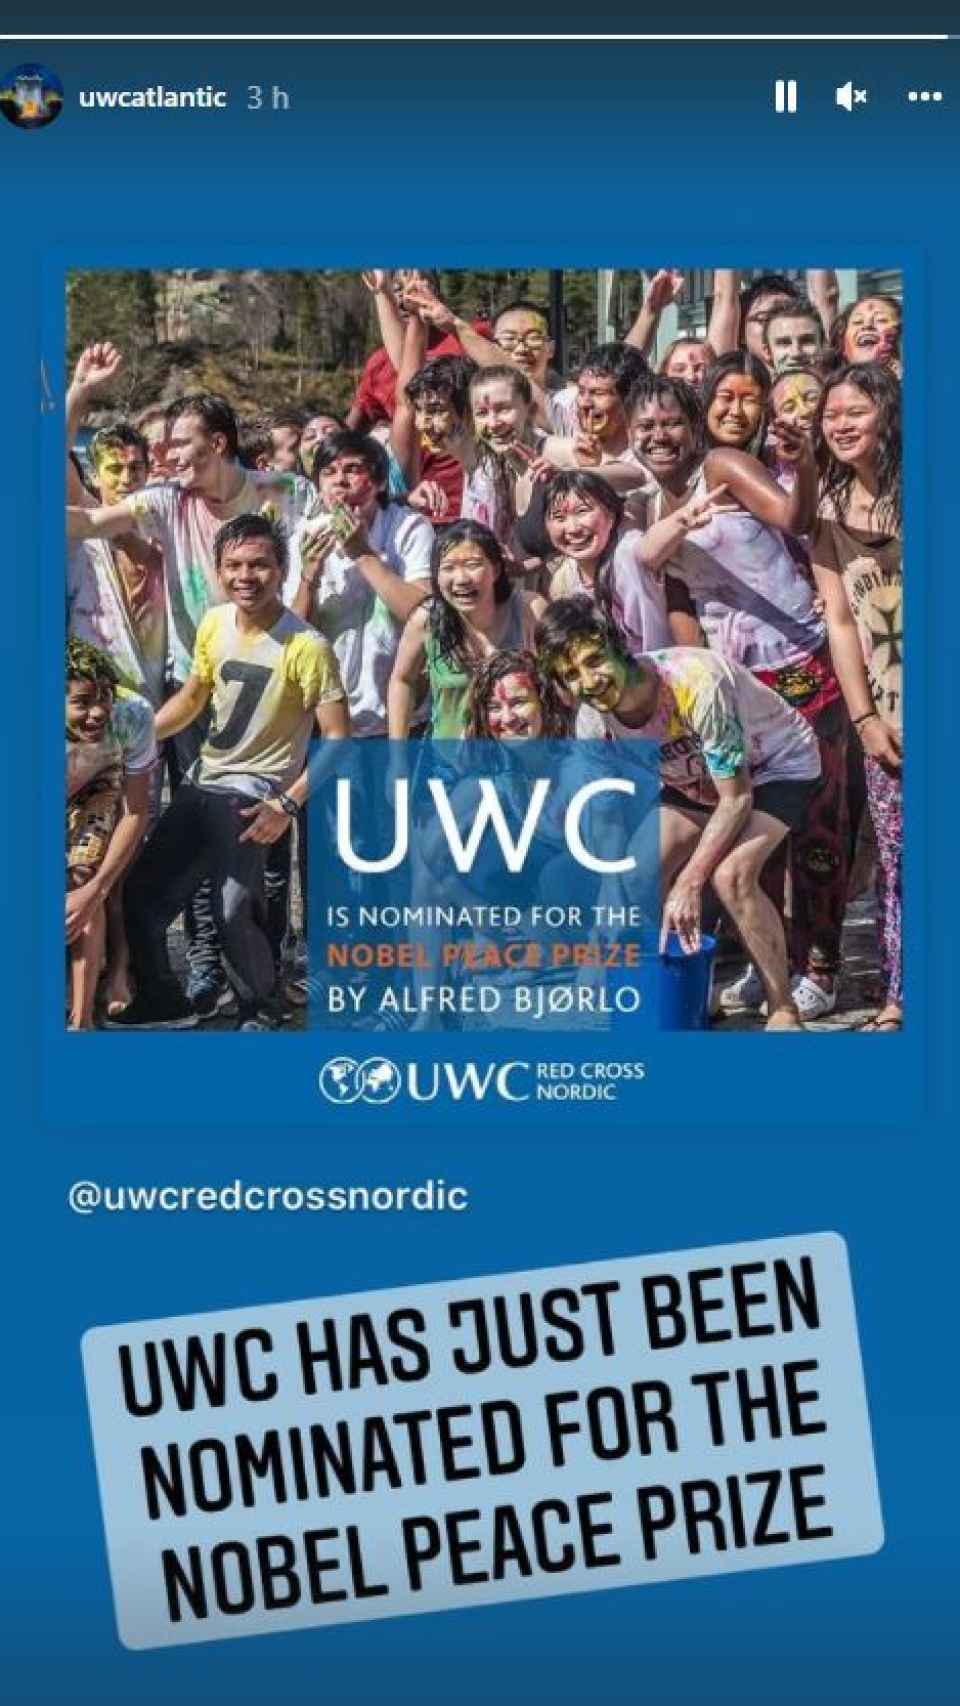 UWC ha compartido la noticia de la nominación a través de sus redes.